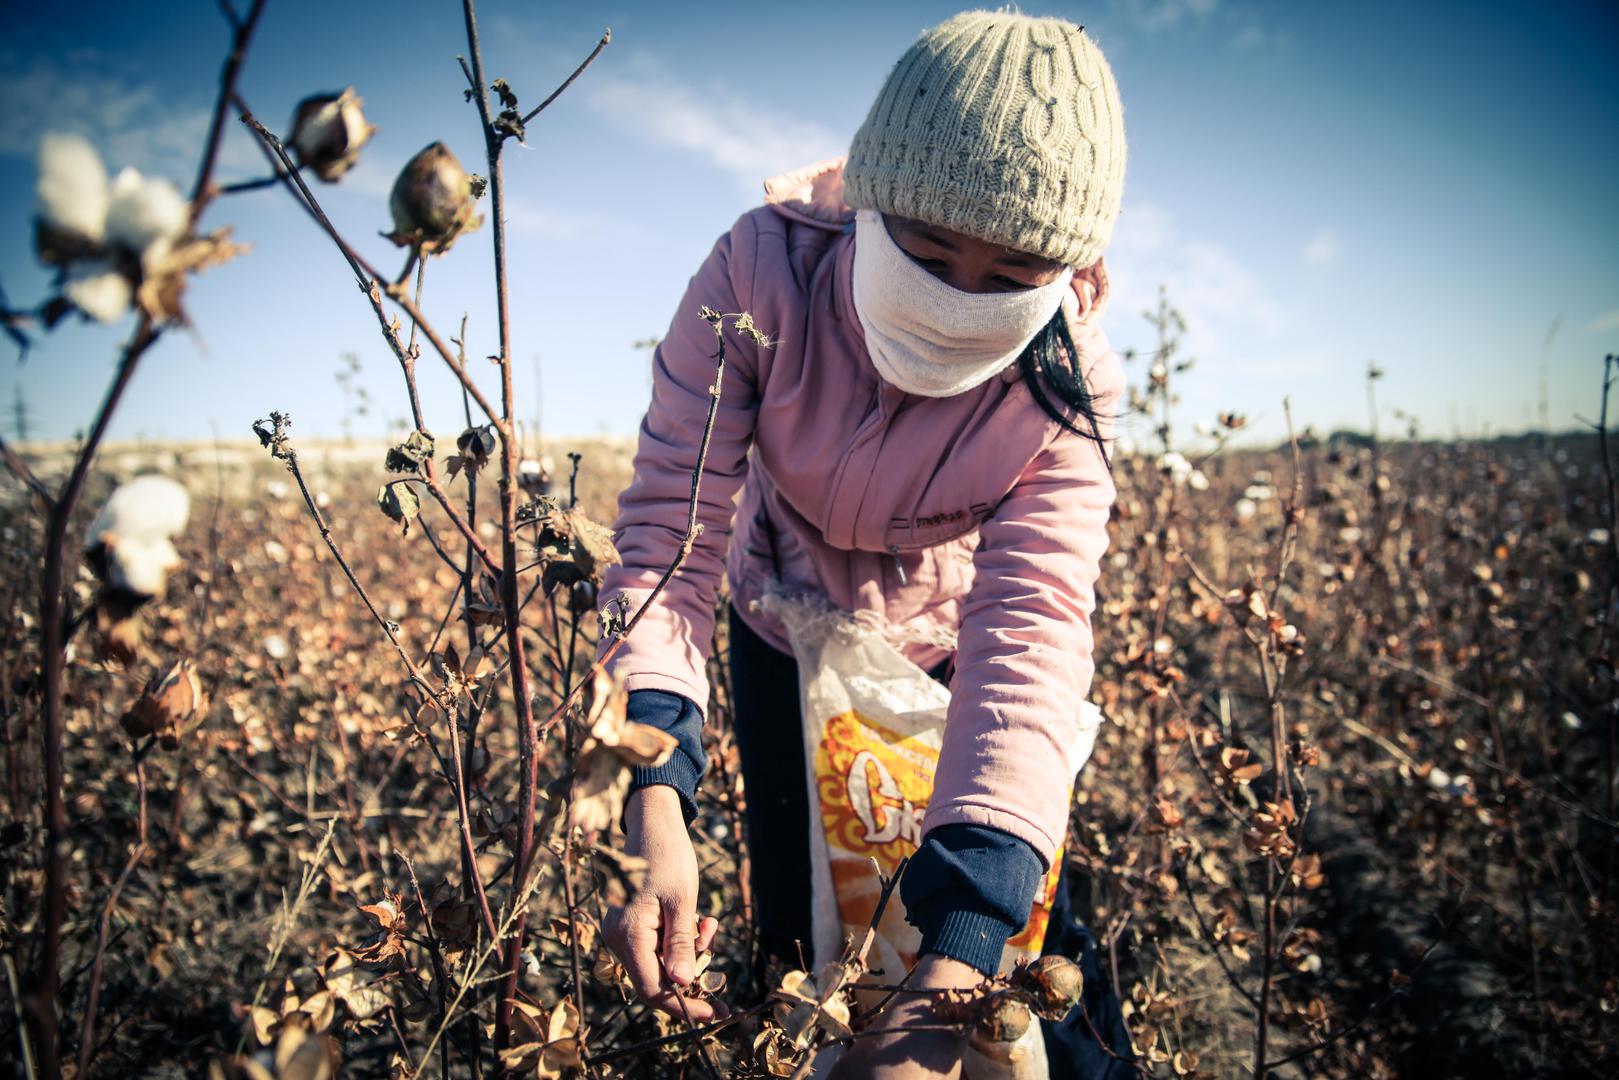 Una mujer trabaja en la cosecha de algodón de 2015, que se extiende cada año desde principios de septiembre hasta finales de octubre o principios de noviembre.